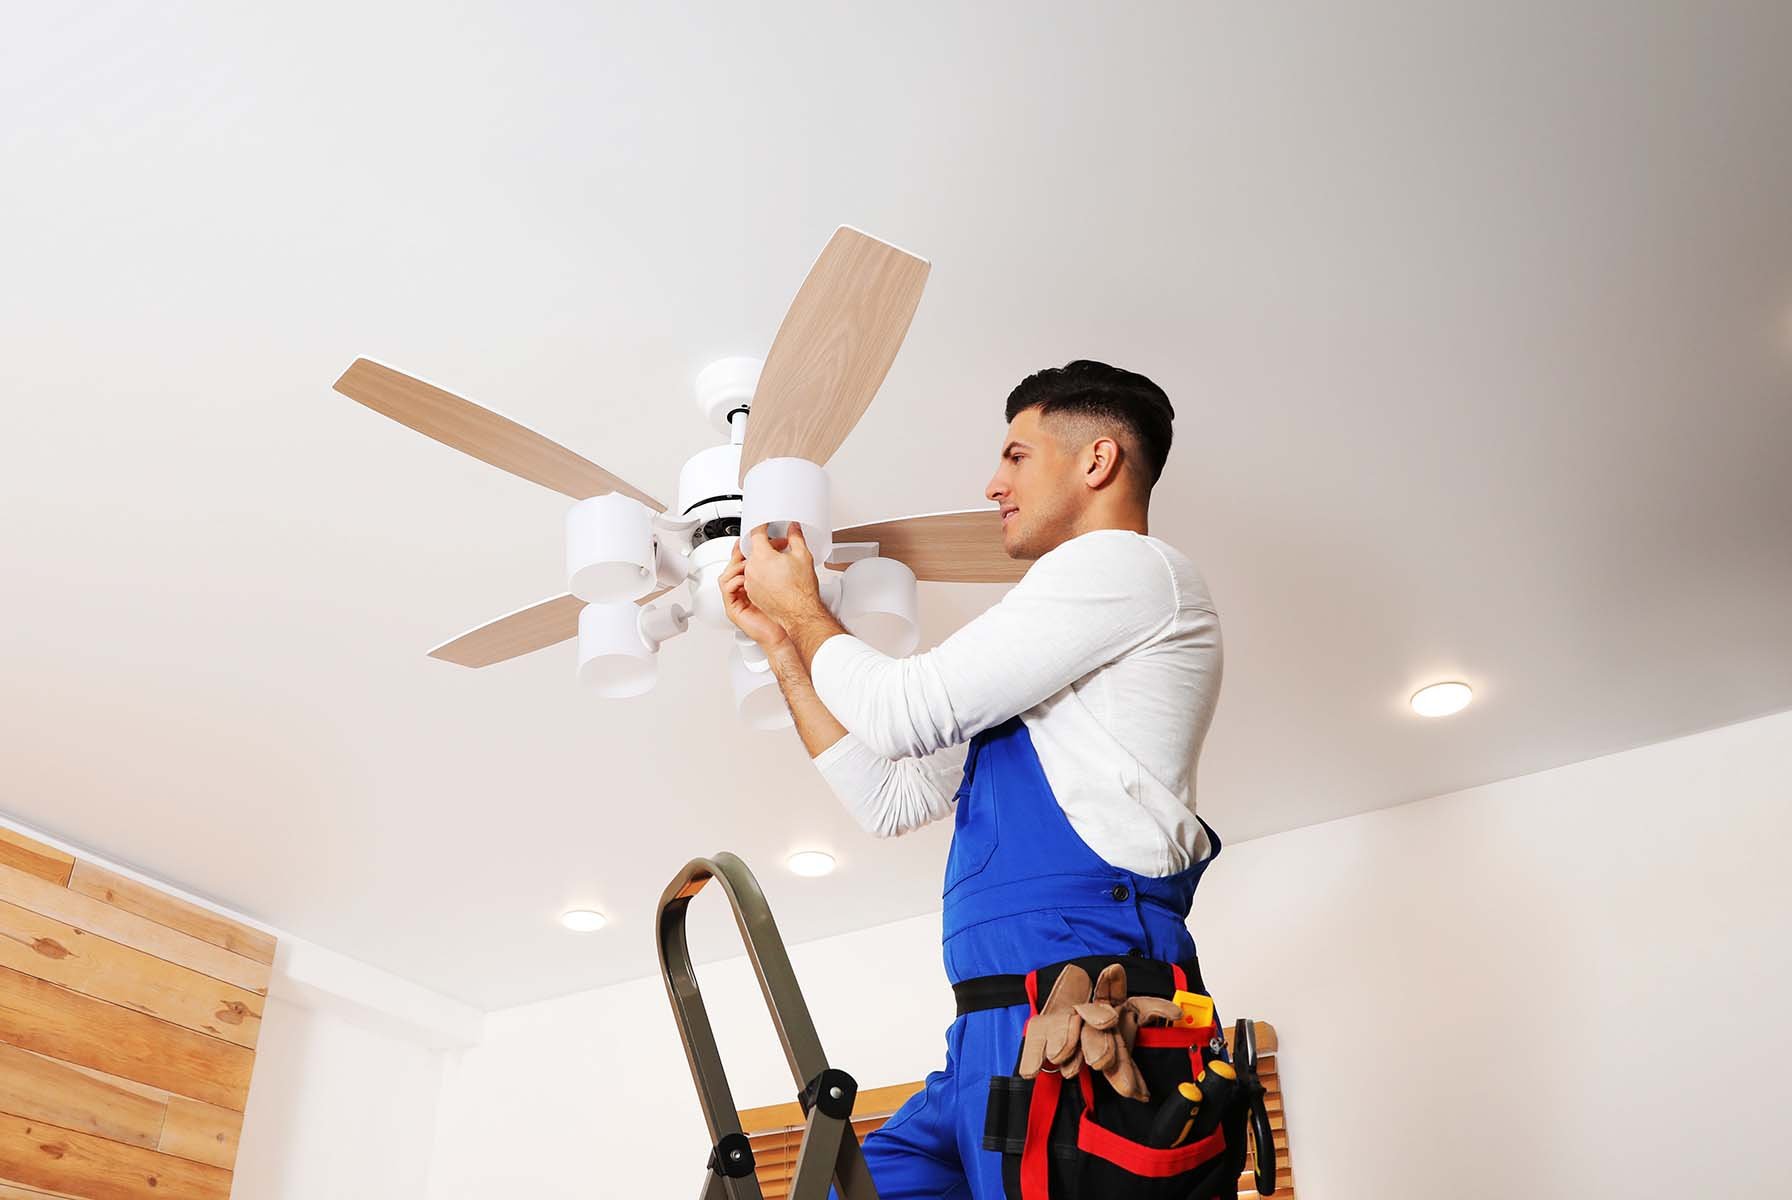 Man on ladder installing a ceiling fan.